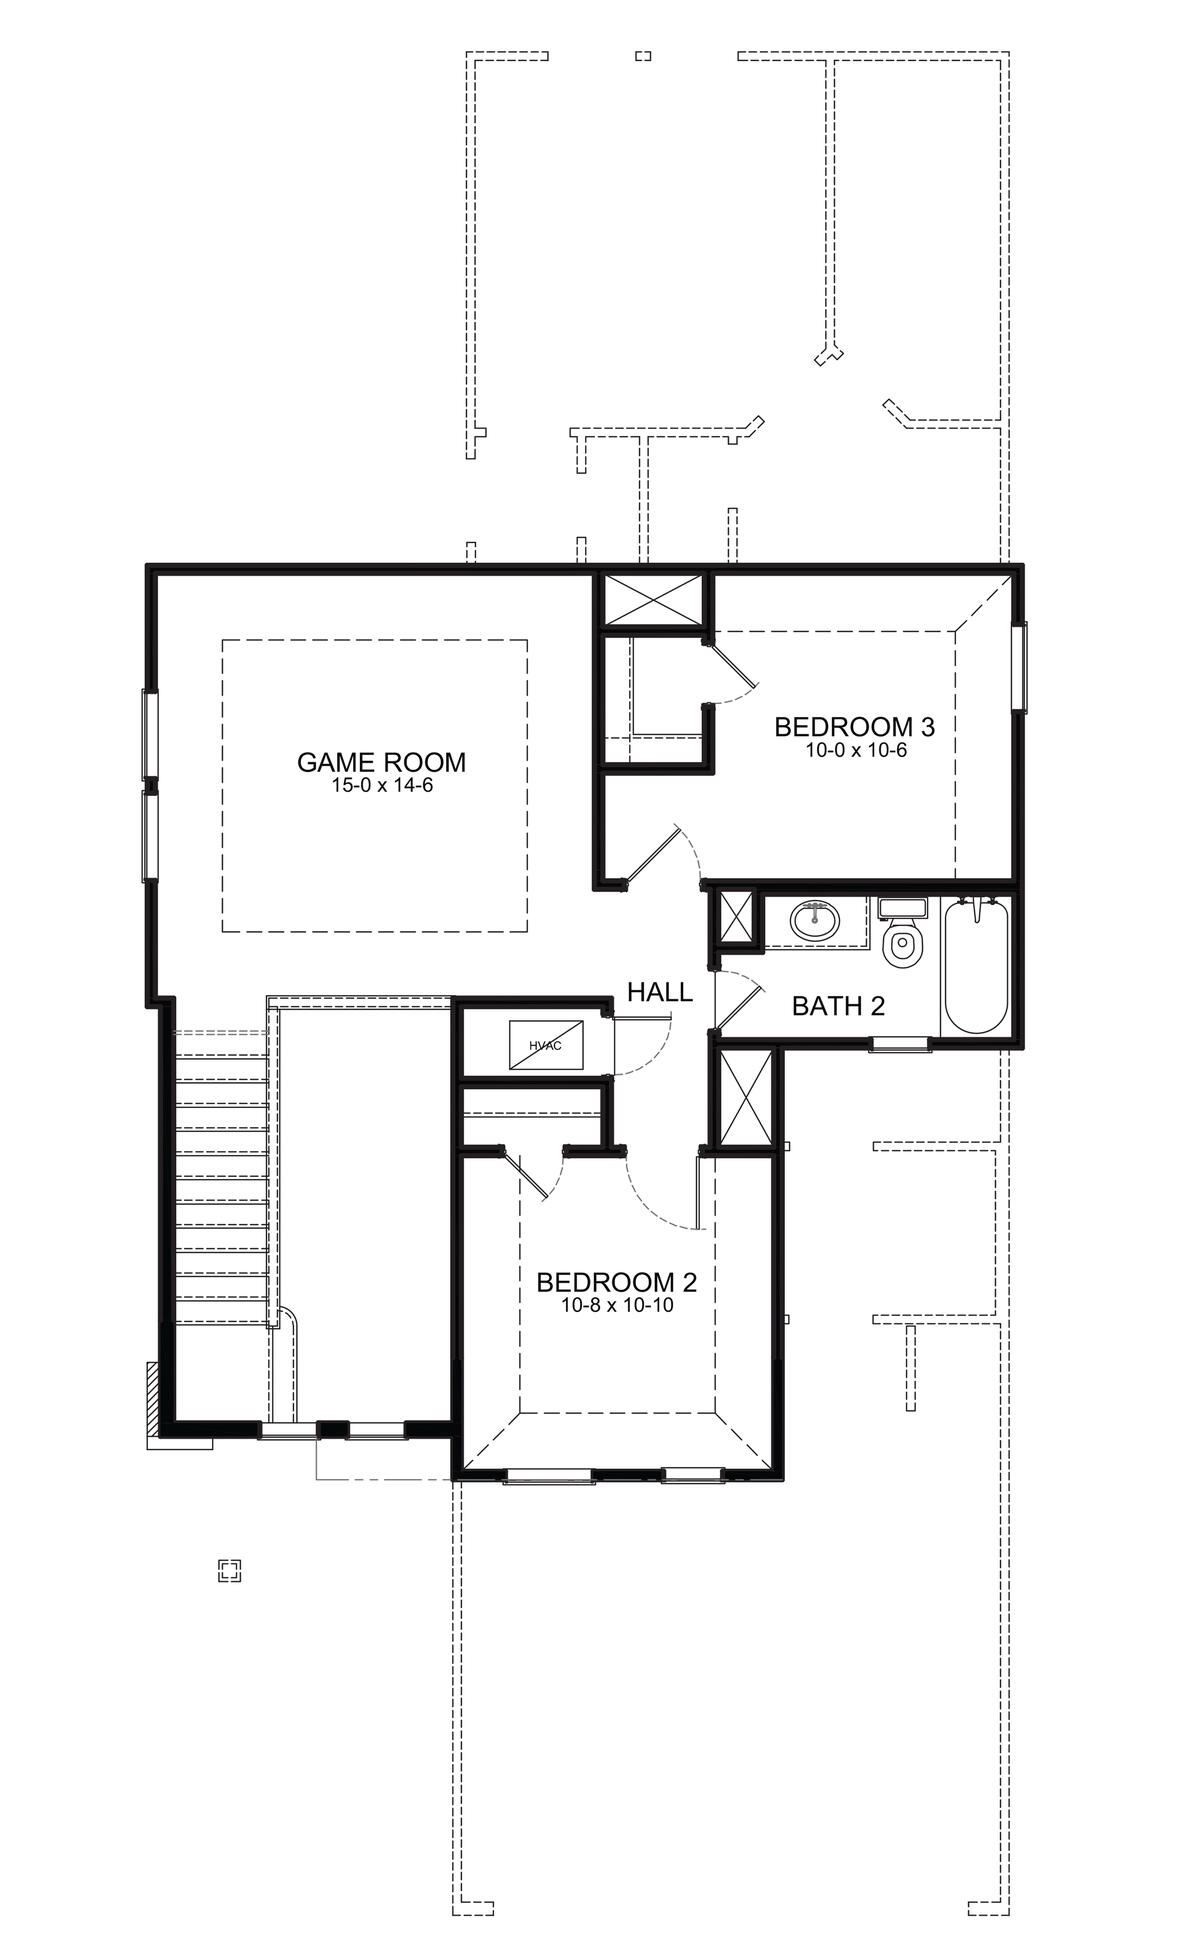 Second Floor Floor Plan